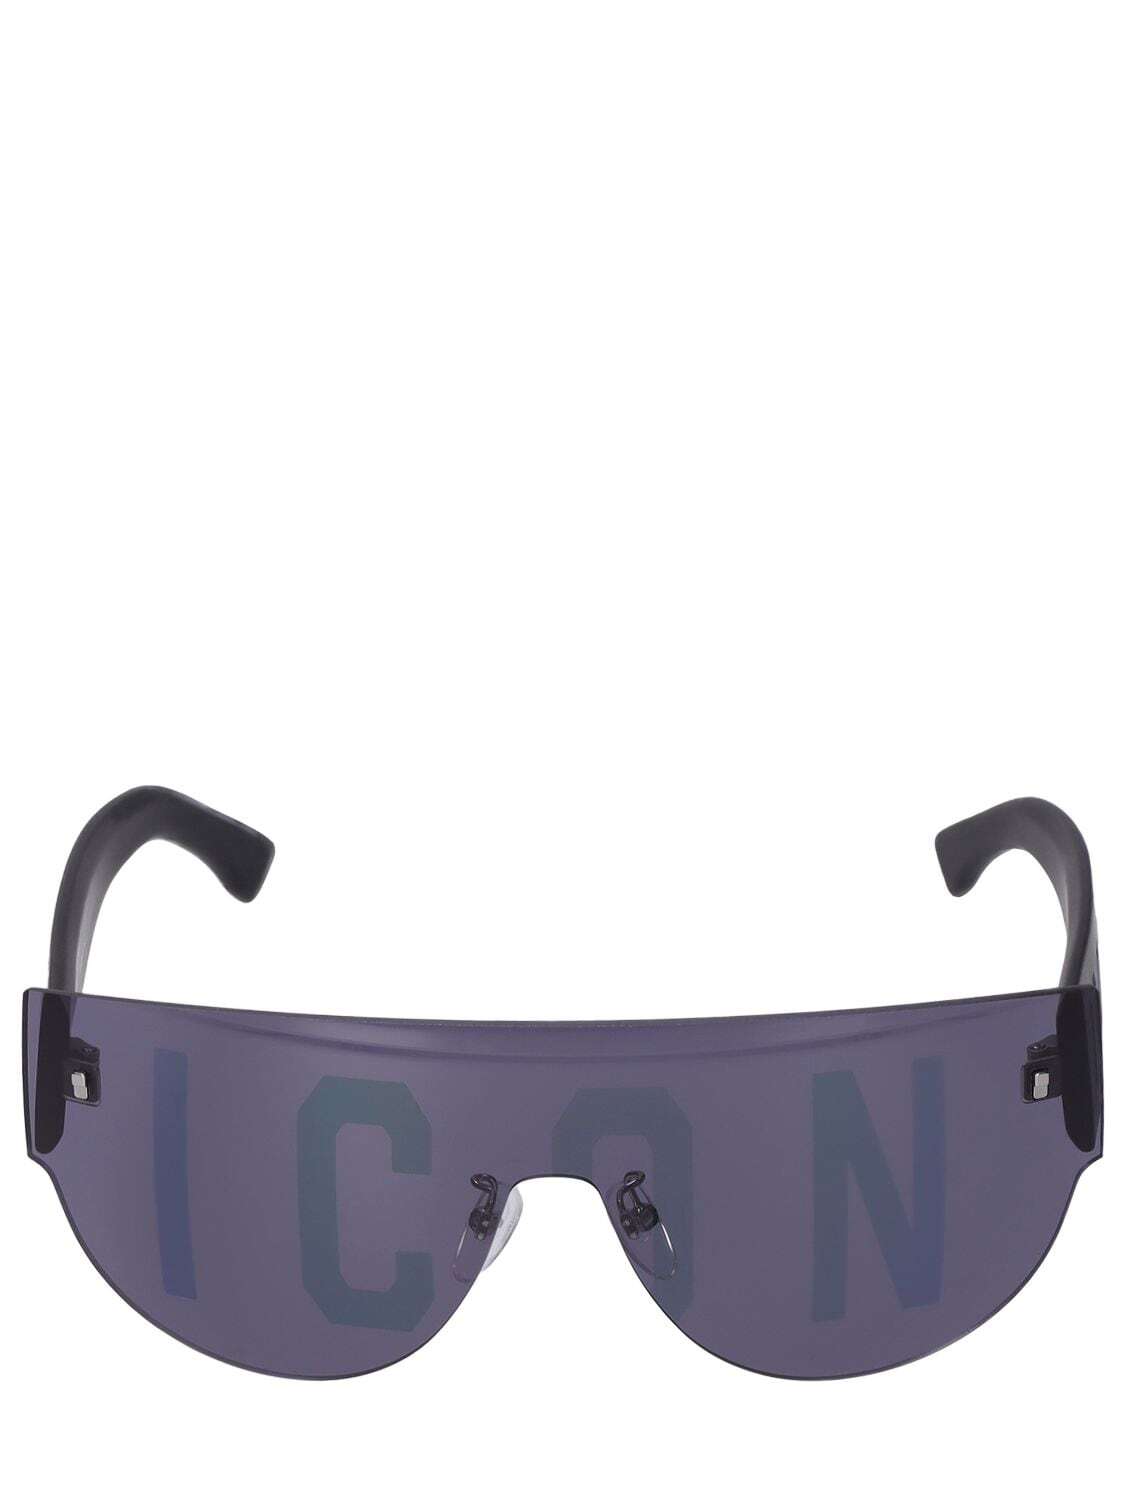 DSQUARED2 Icon Squared Nylon Sunglasses in black / grey